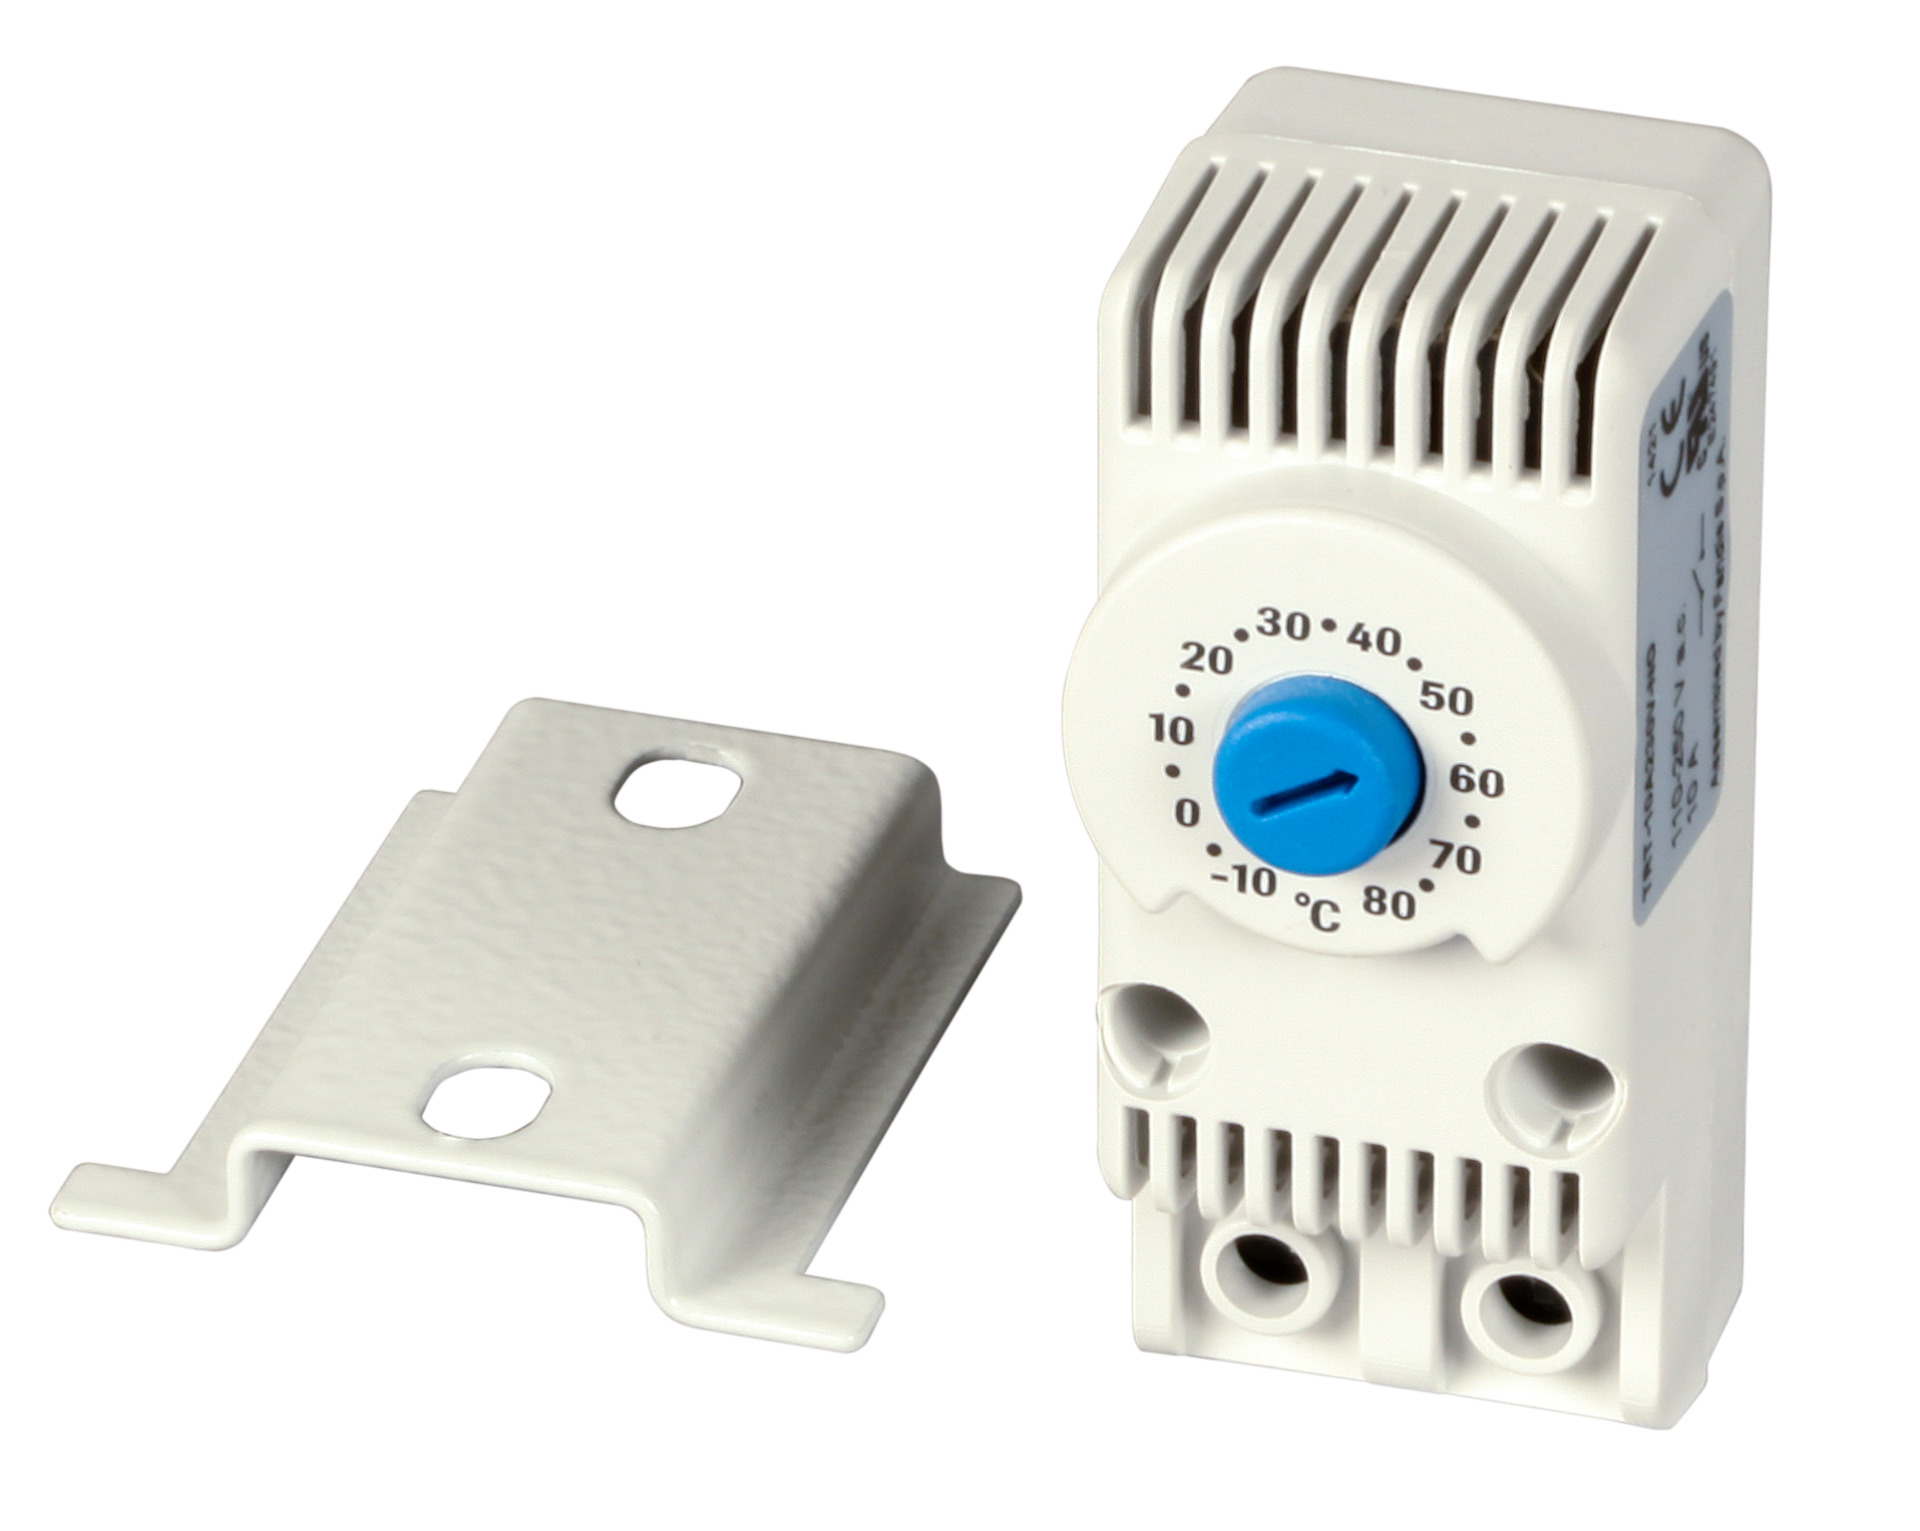 Thermostat incl. Bracket, for Fan Units 69165xV3 or Single Fan 691664